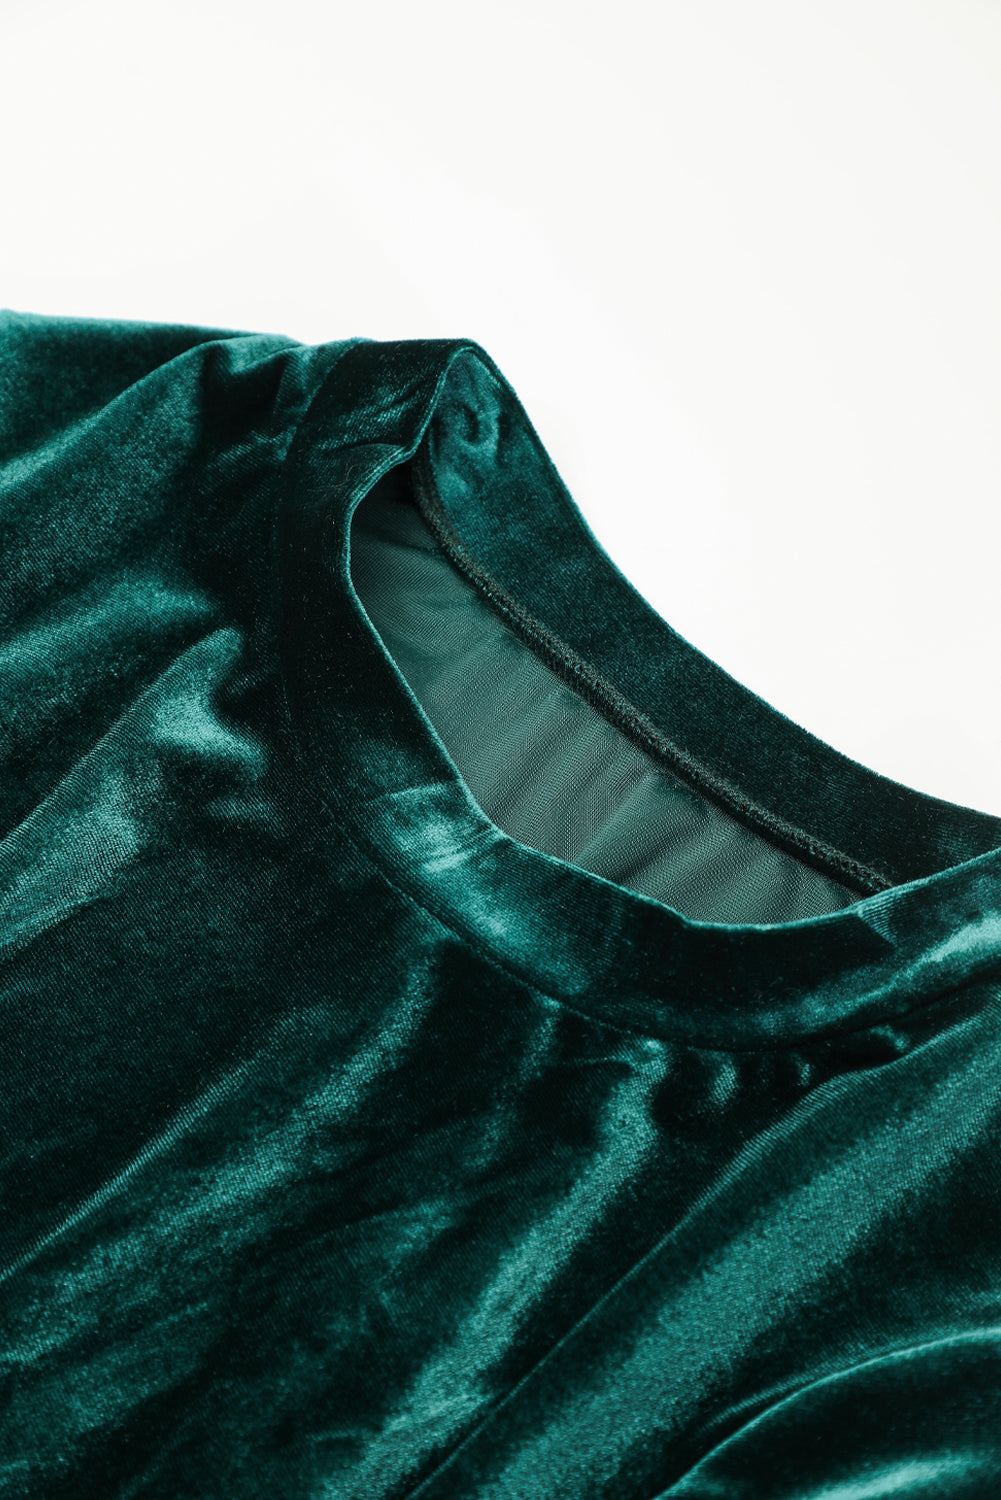 Zelena žametna obleka z naborki in oprijetimi rokavi